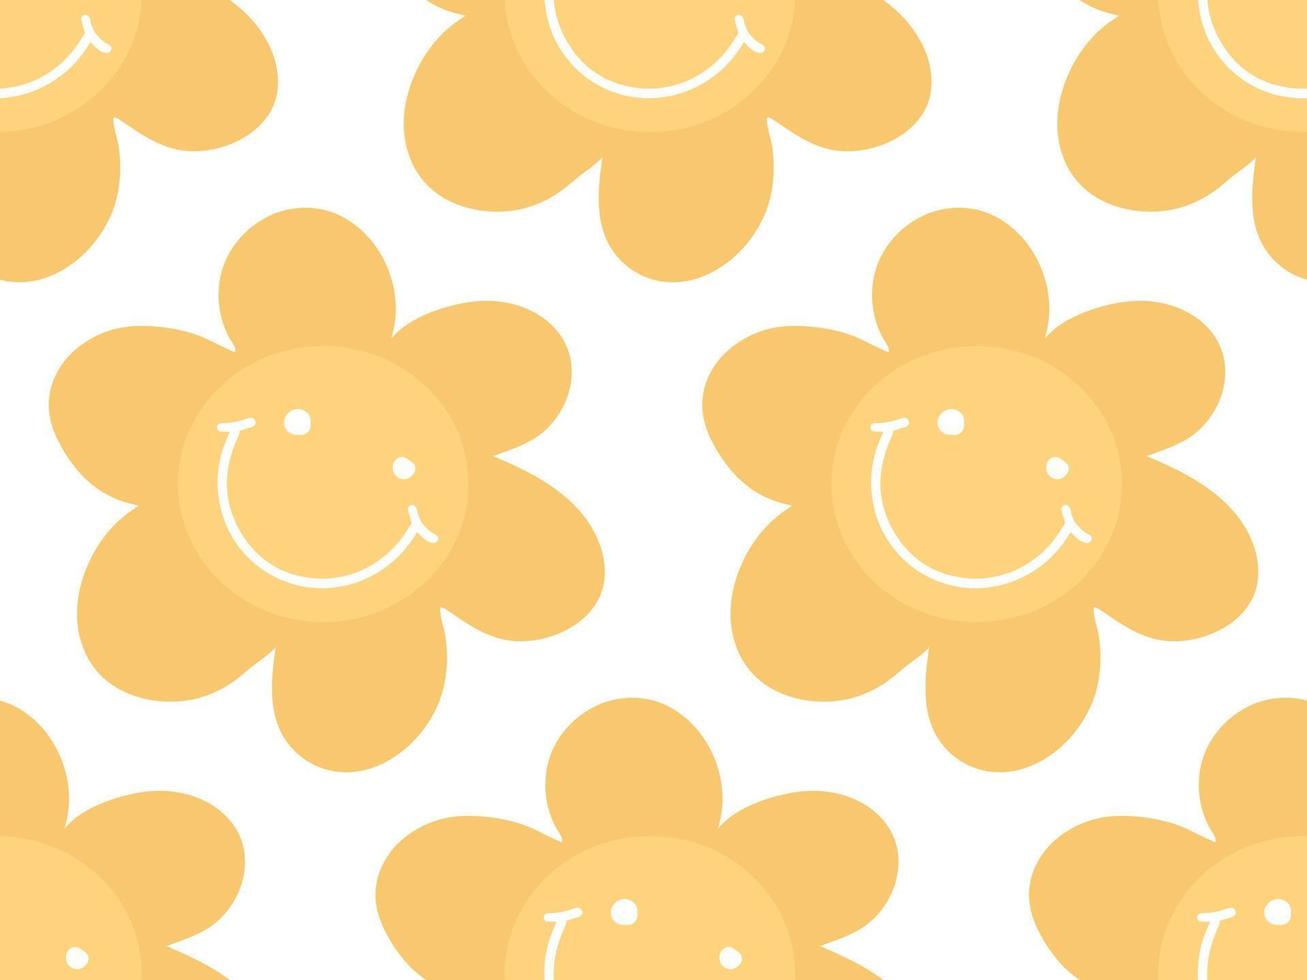 Blumenhintergrund des netten einfachen nahtlosen Musters mit Gekritzelgänseblümchen-Blumenkopf, Gesicht mit Lächeln. positive gelbe blumenkulisse vektor